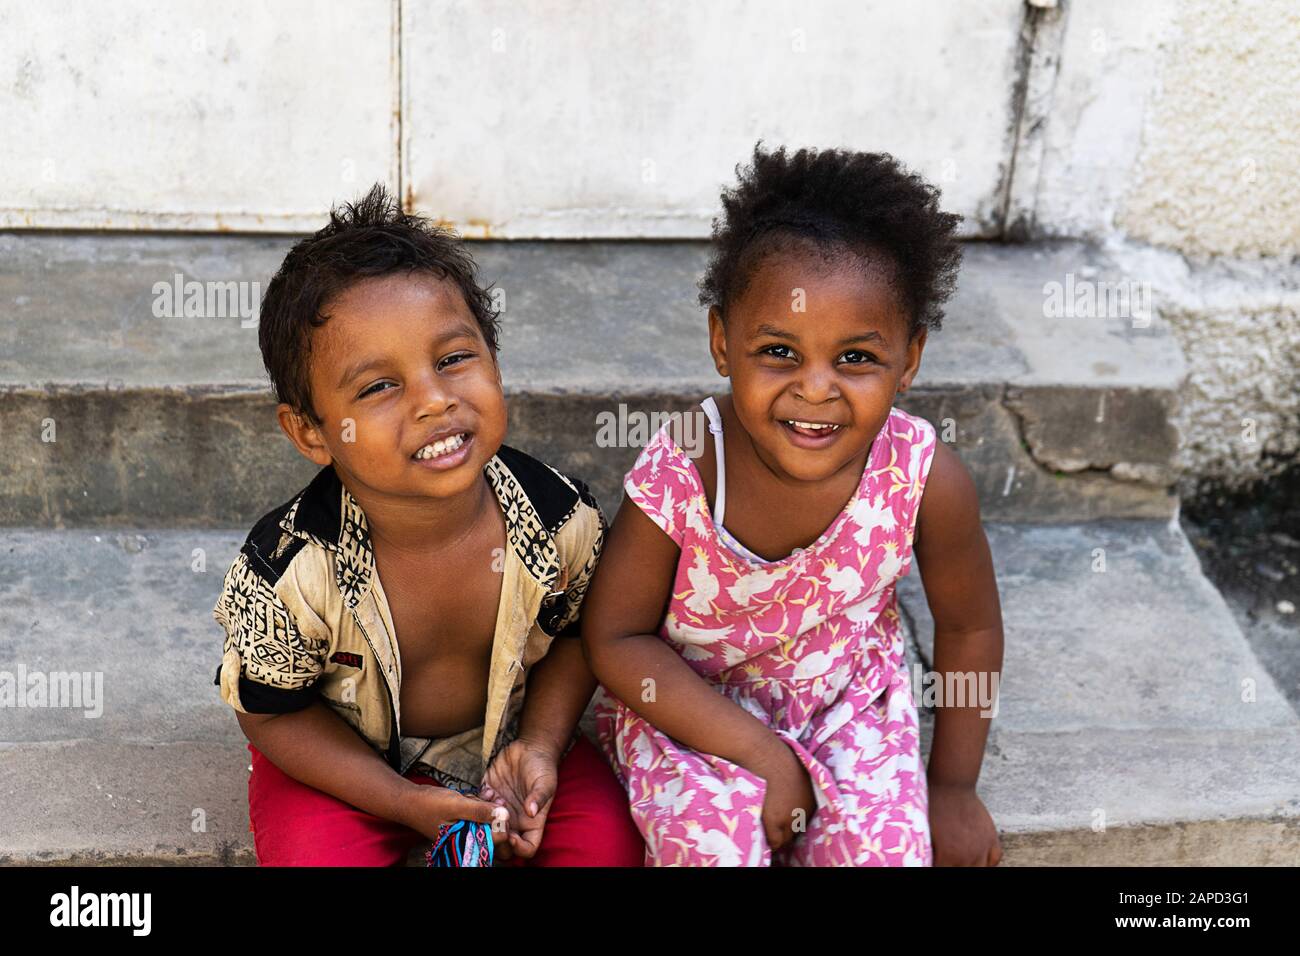 Tanzania, Zanzibar - 21 gennaio 2020: Bambini africani che giocano e si propongono per una fotografia. Foto Stock